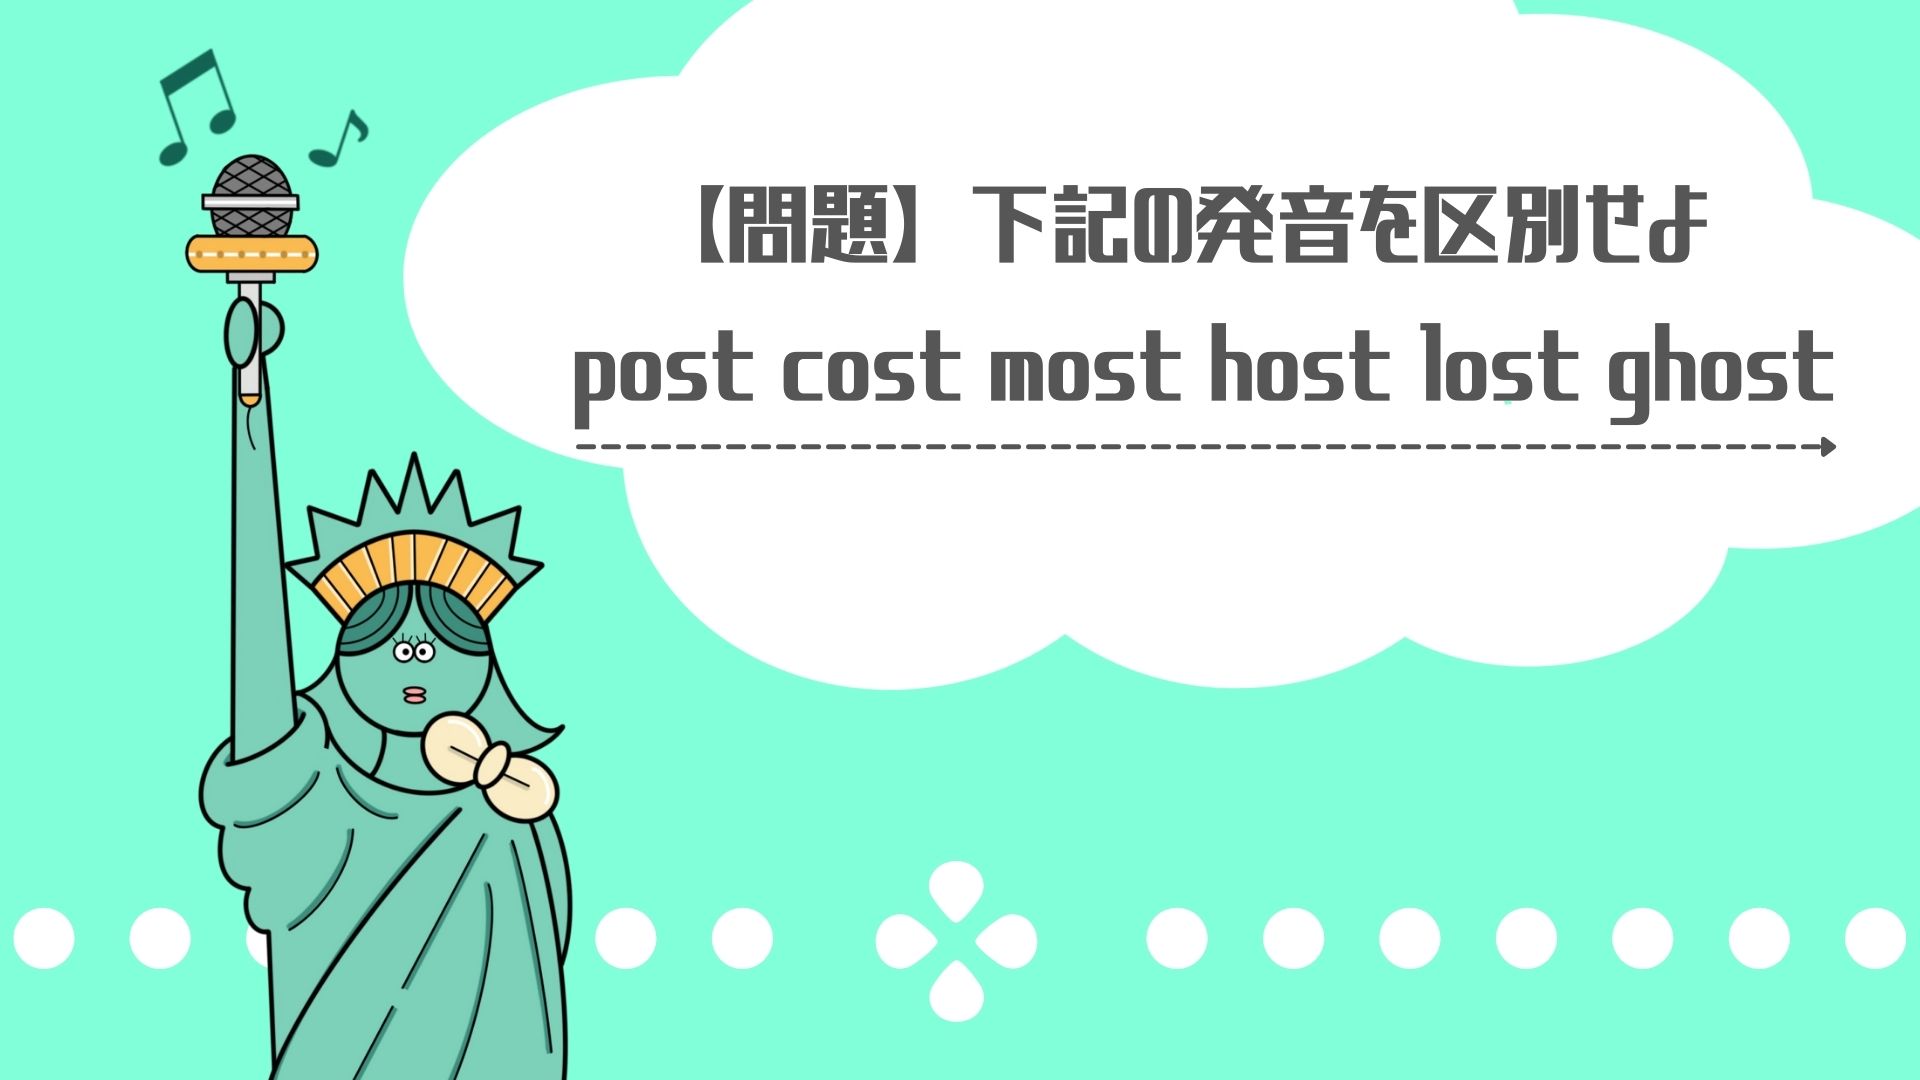 【postとcost】~ostの単語はスペルが似ていても発音が違うことがある。post,cost,most,host,lost,ghost,似ている発音でも違う発音。アイキャッチ画像。自由の女神のイメージ。緑が基調の画像。